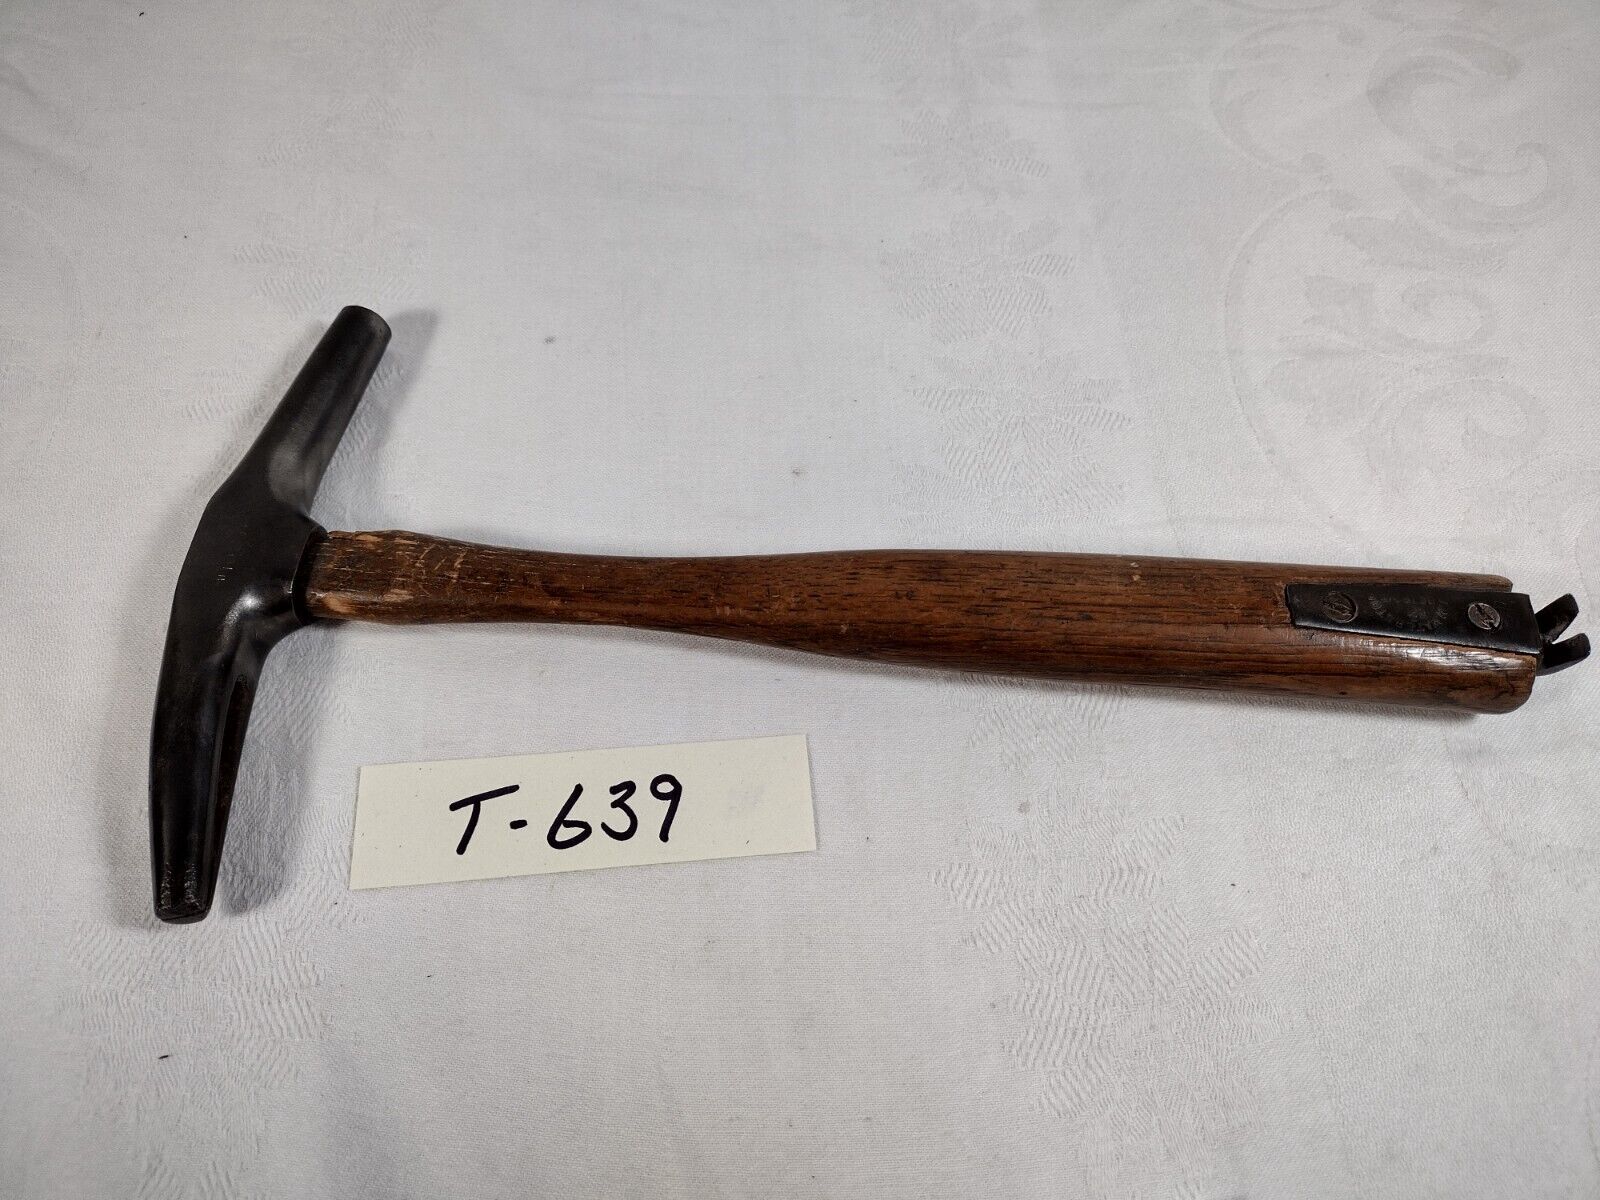 Vtg JM Waterstone Tack Hammer H1027 w/ Tac Puller in end of Wood Handle (639)